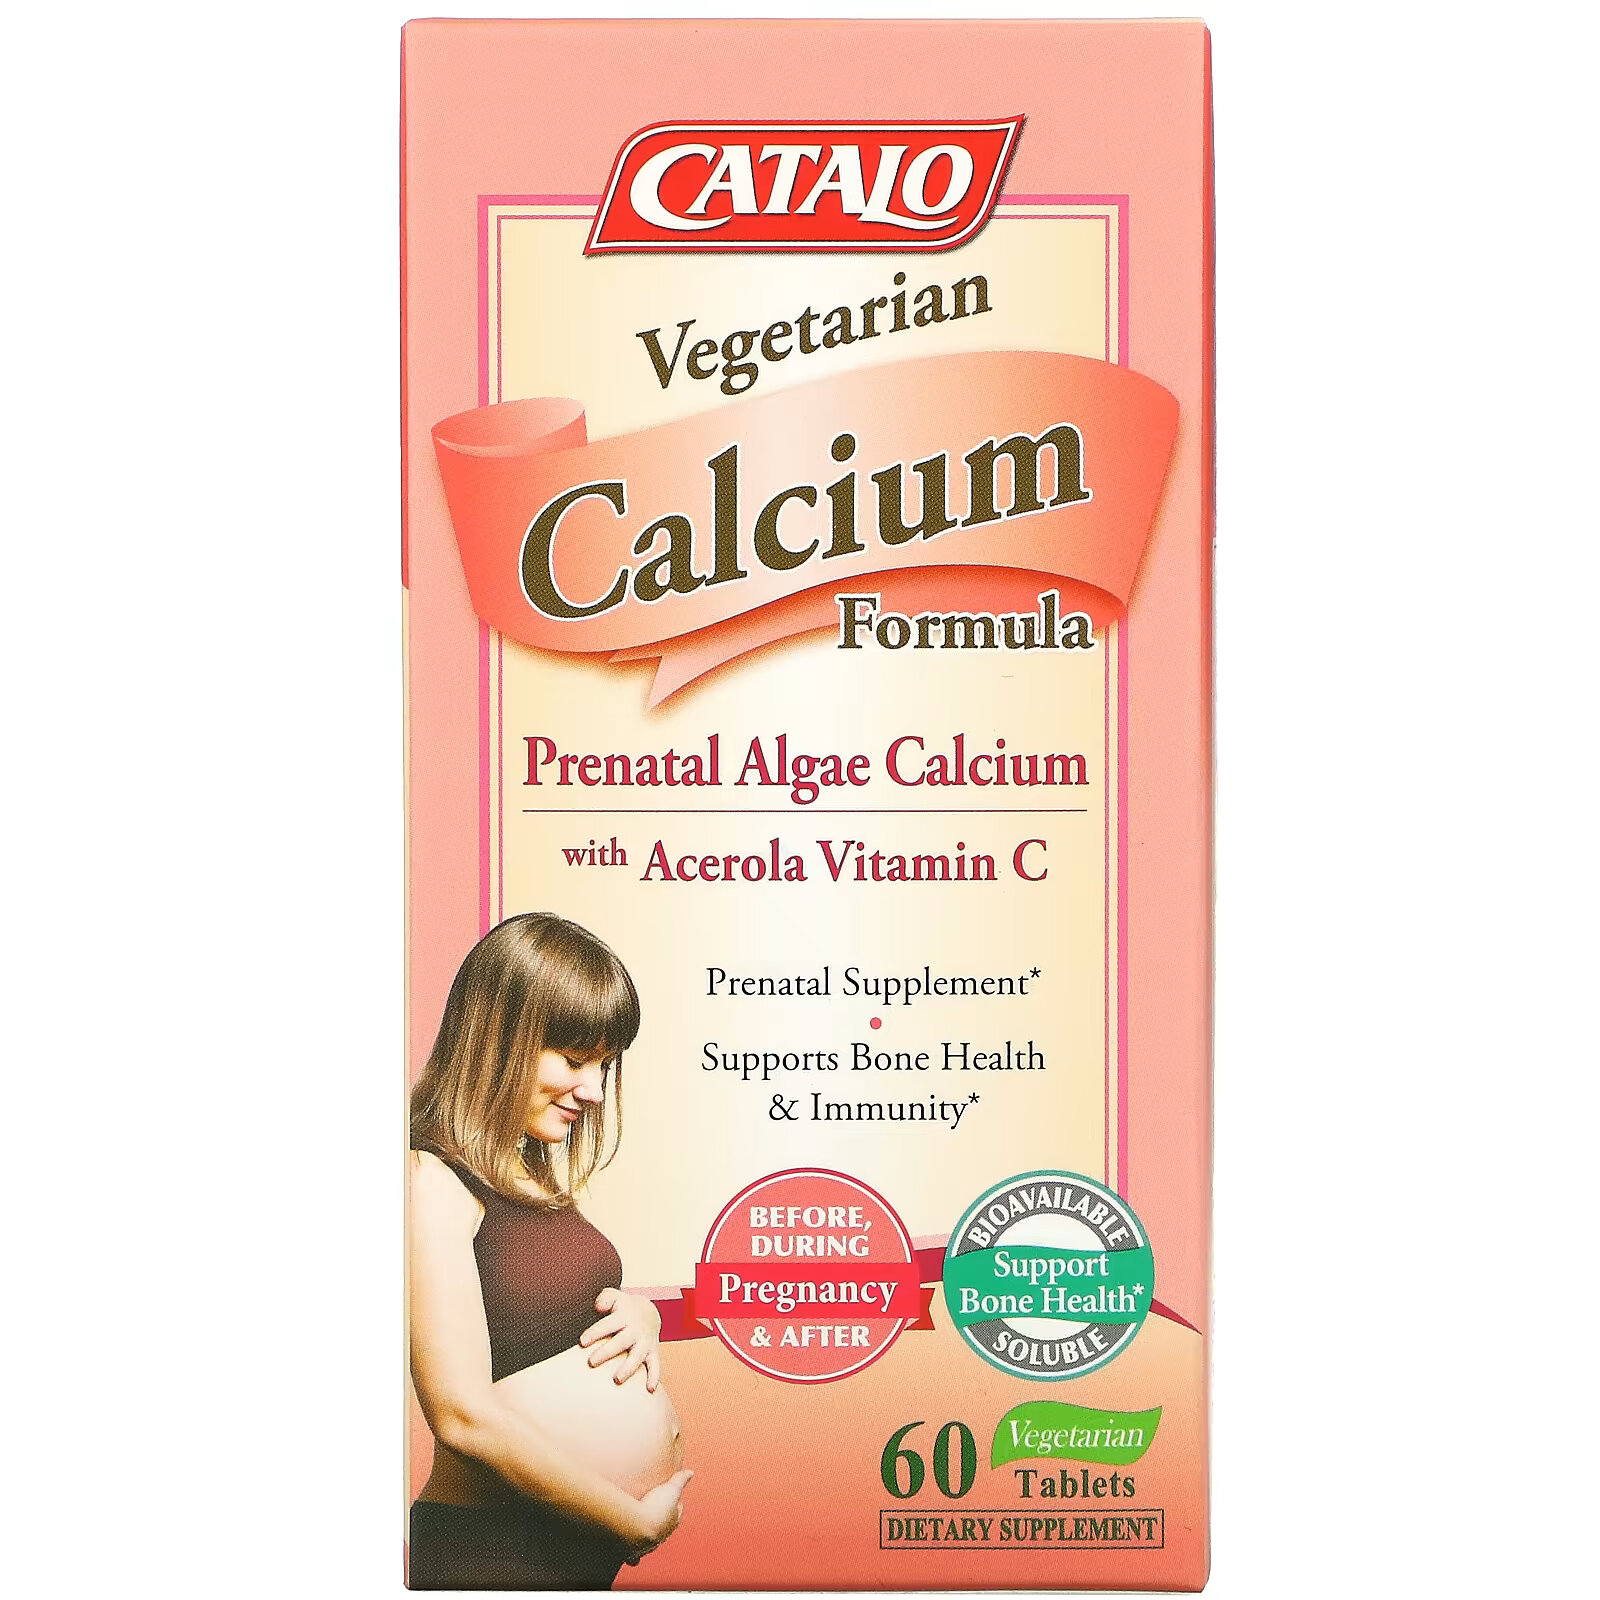 Catalo Naturals, вегетарианская формула с кальцием, кальций из пренатальных водорослей, 60 вегетарианских таблеток дгк из водорослей для беременности catalo naturals 60 мягких таблеток